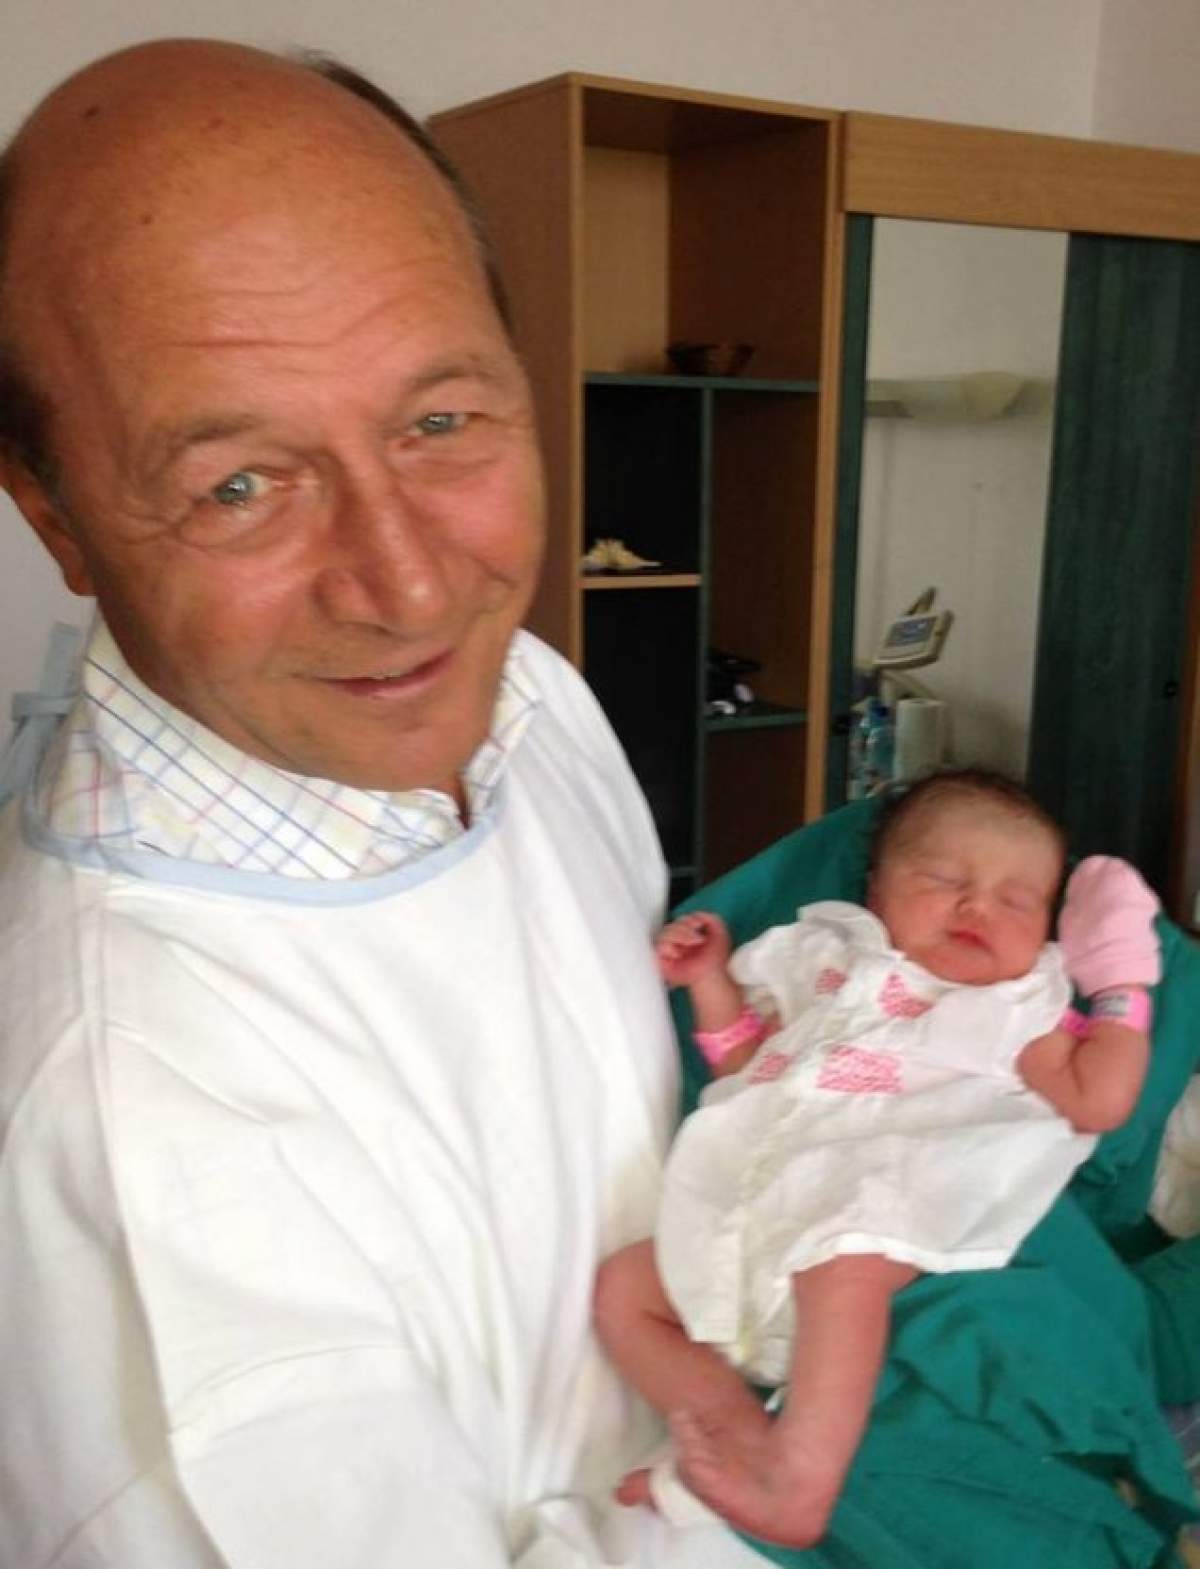 Soarta i-a fost pecetluită! Fetiţa Elenei Băsescu poate deveni călugăriţă sau "prezicătoare"